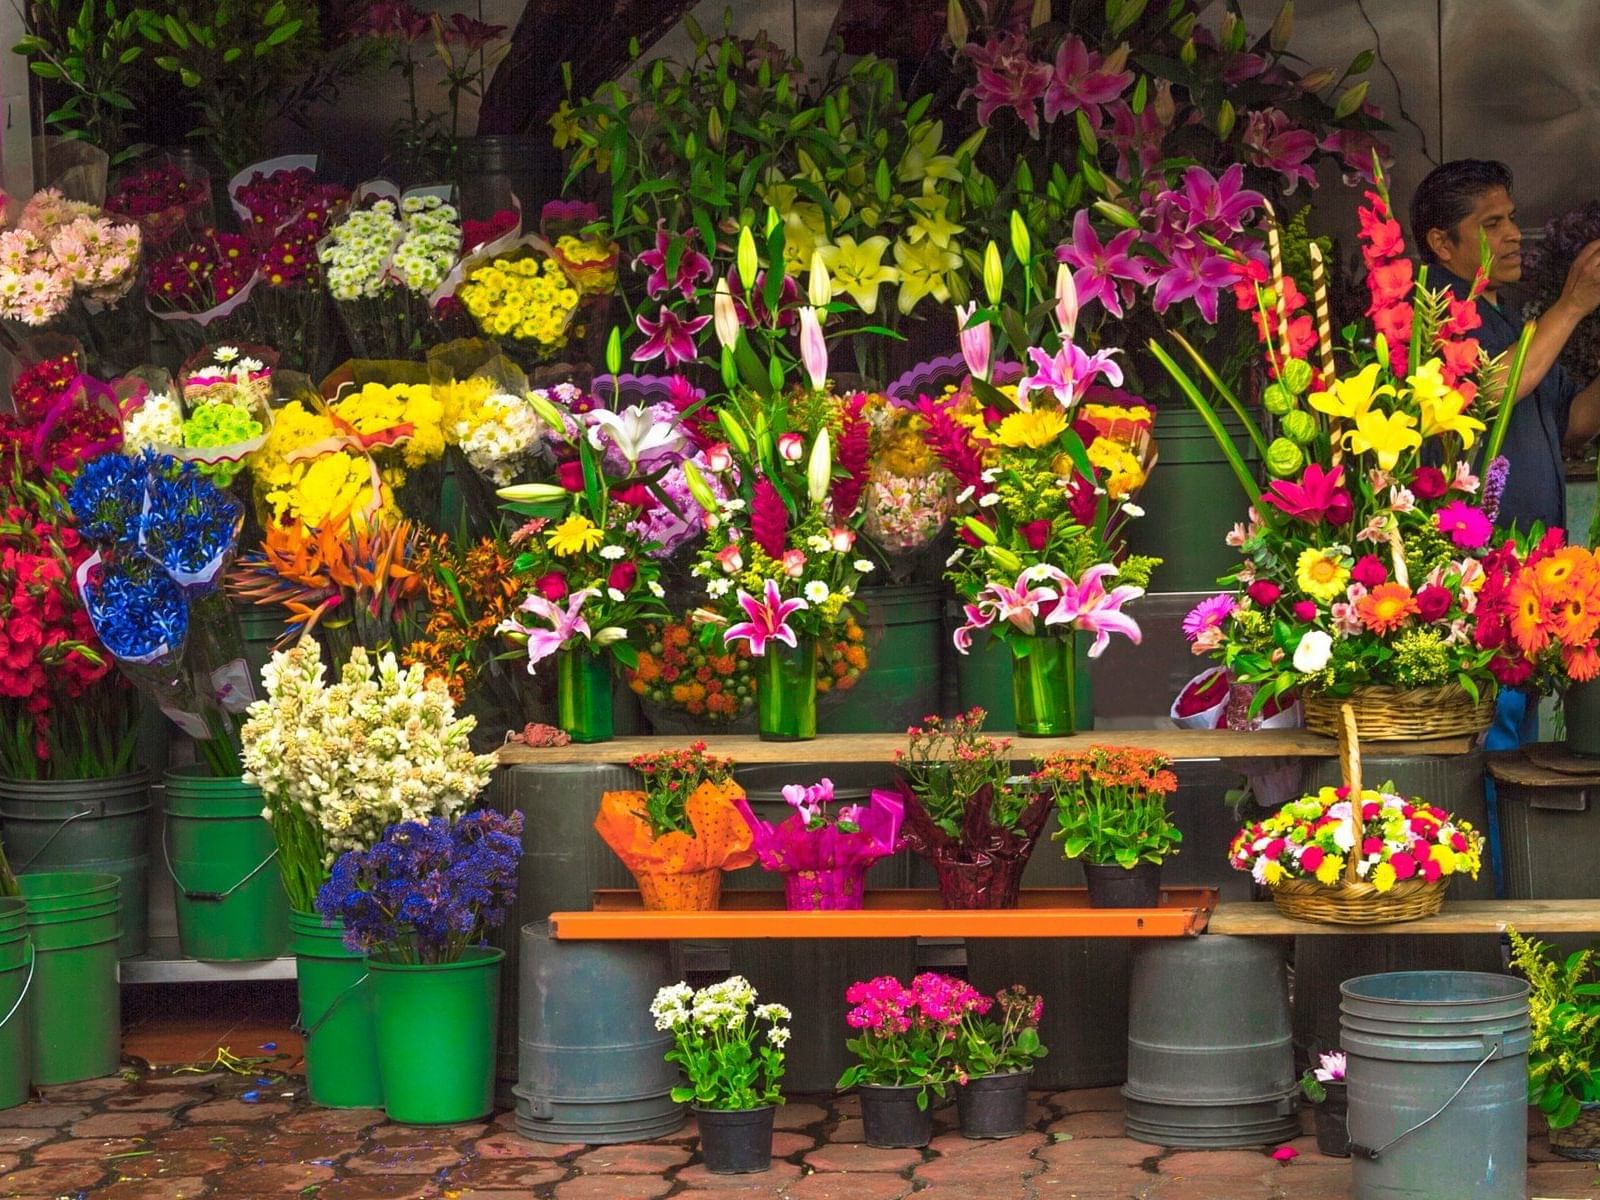 Tienda de flores en el mercado de Jamaica, cerca de Grand Fiesta Americana